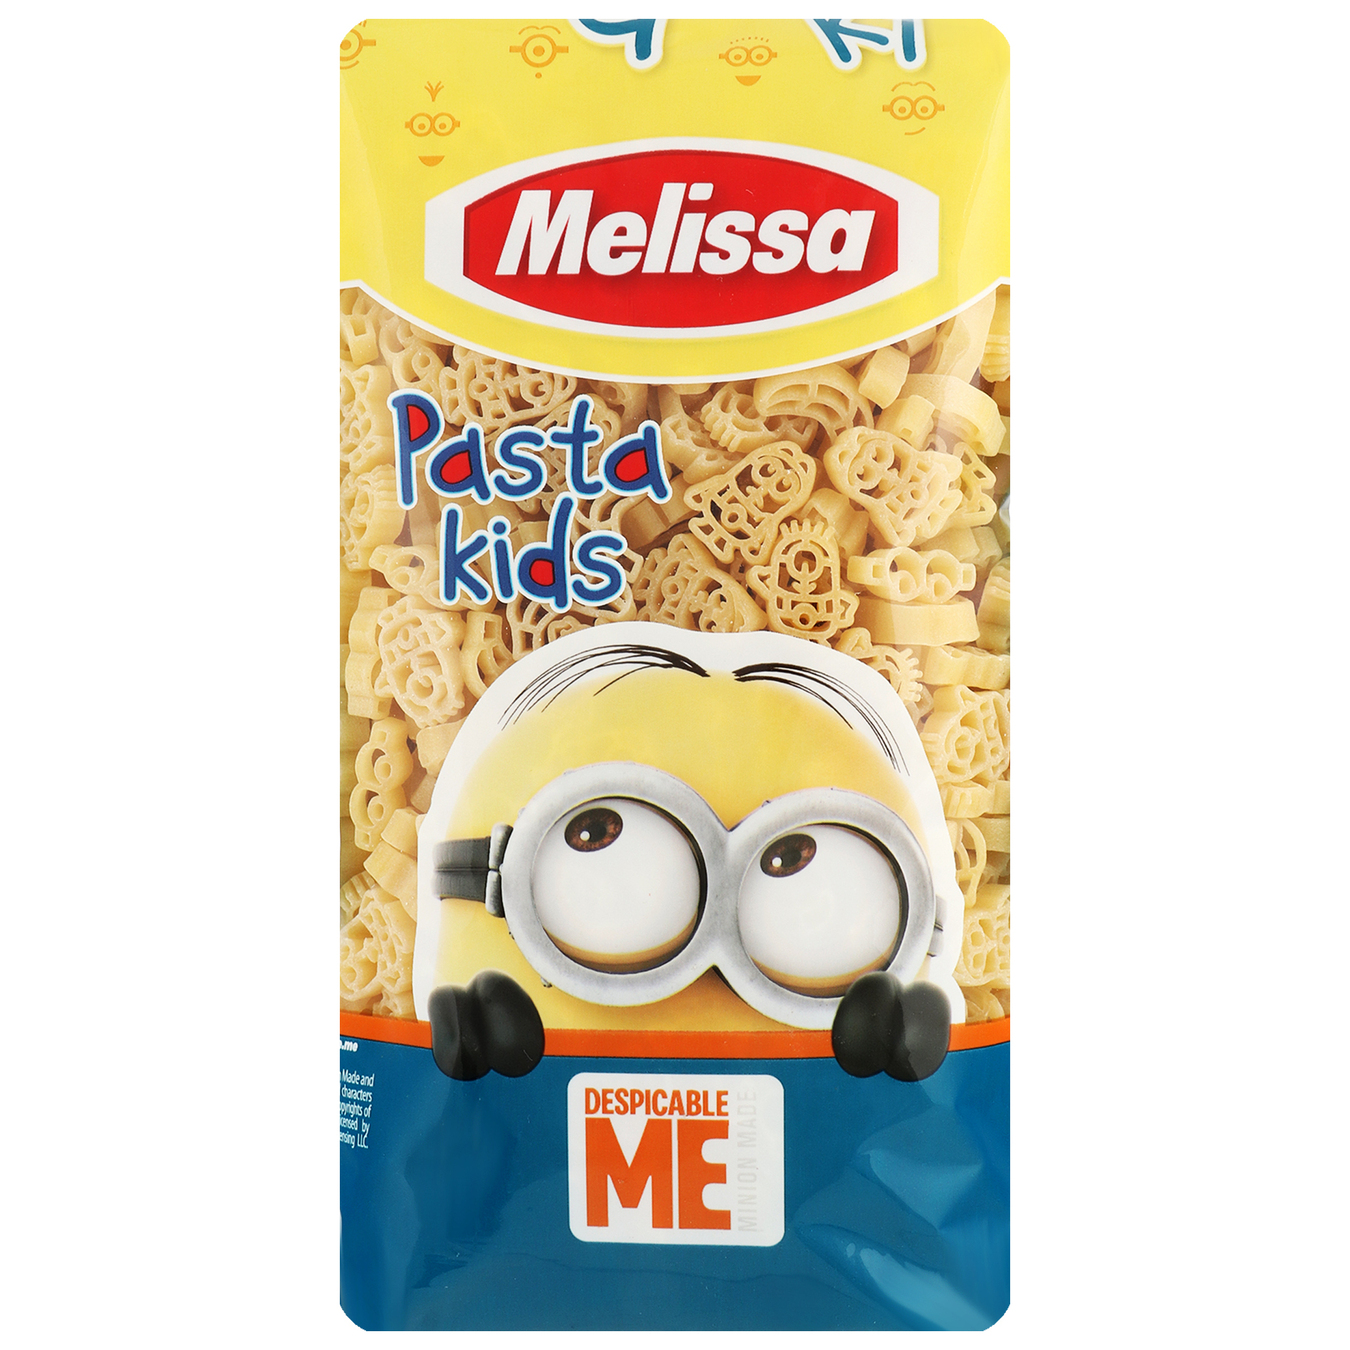 Melissa Kids Despicable Me Pasta 500g